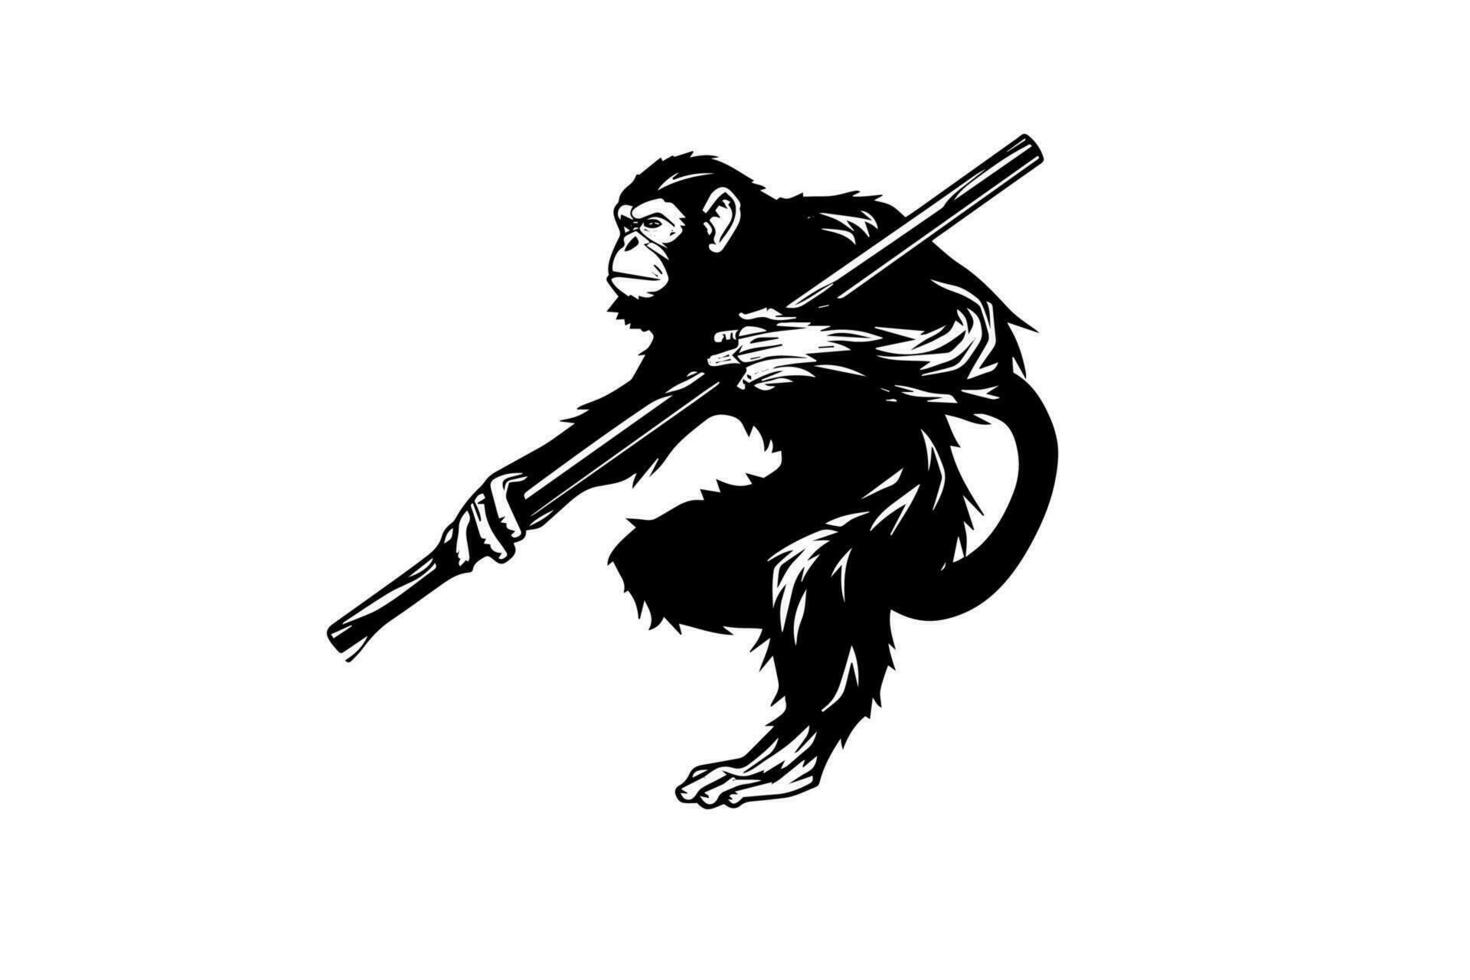 karaté singe avec une bâton dans le sien mains. vecteur gravure style esquisser illustration.